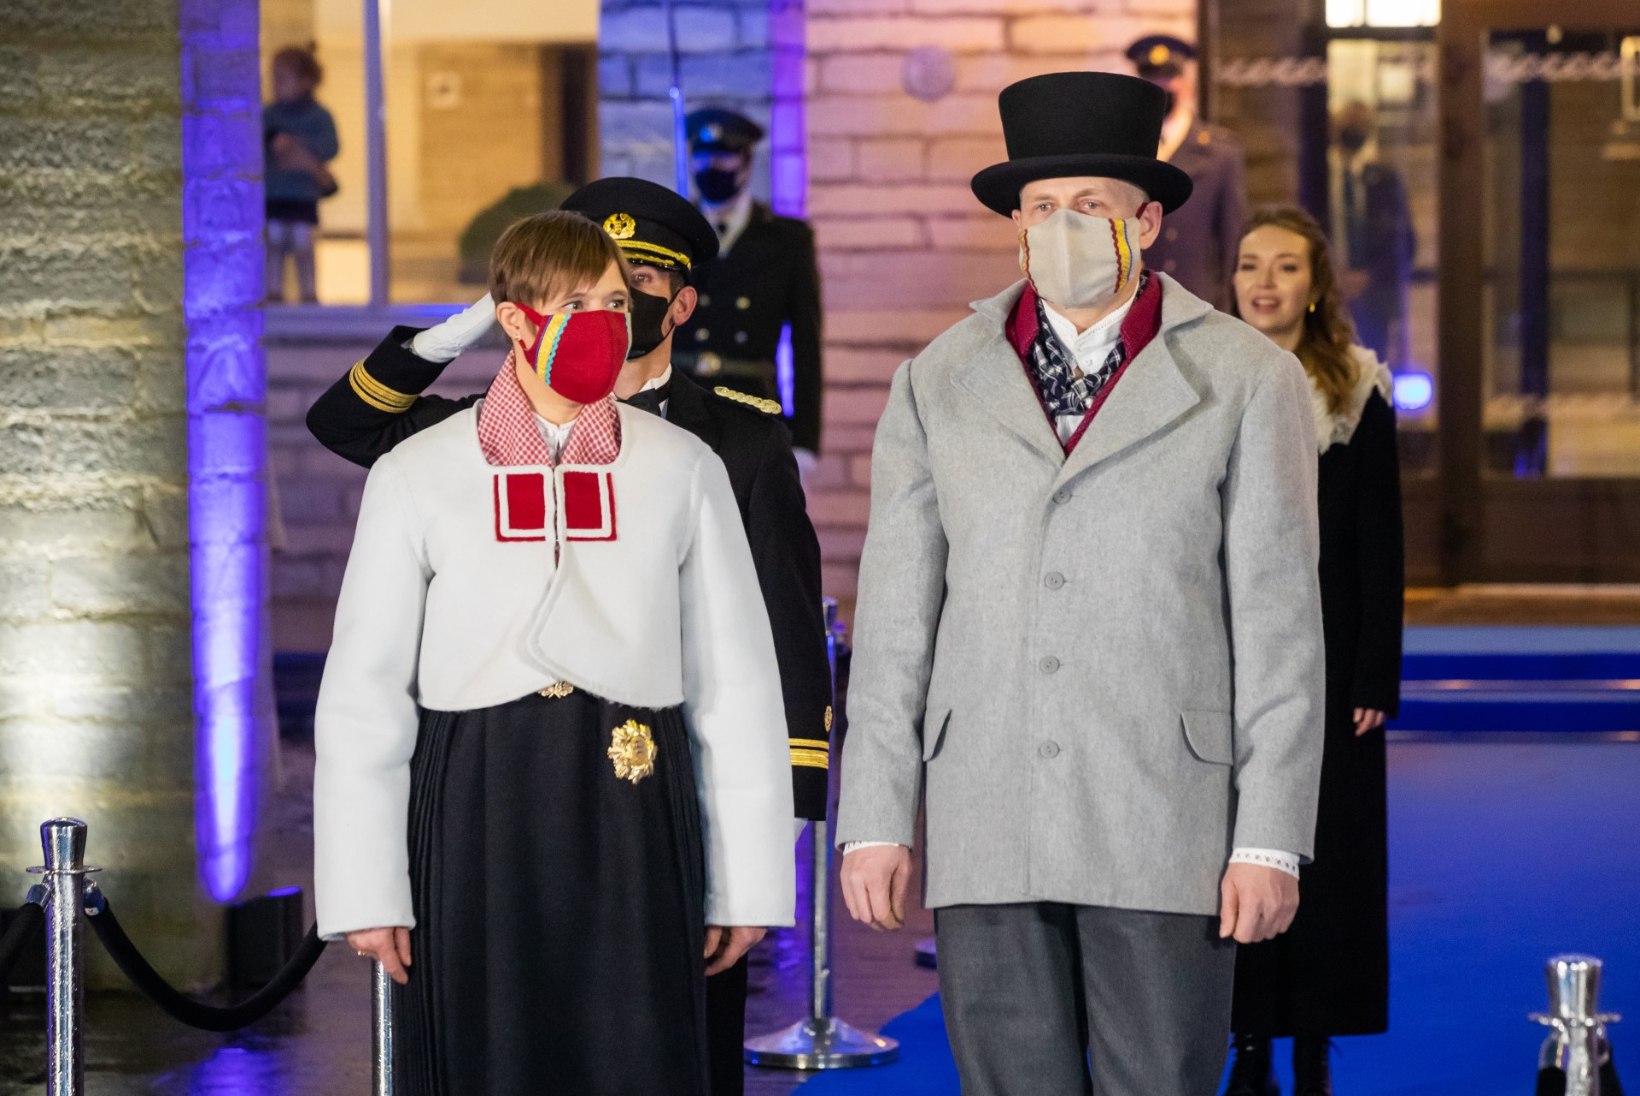 FOTOD | Presidendipaar kannab Jämaja kihelkonna rahvariideid: valiti need presidendi esivanemate juurte järgi